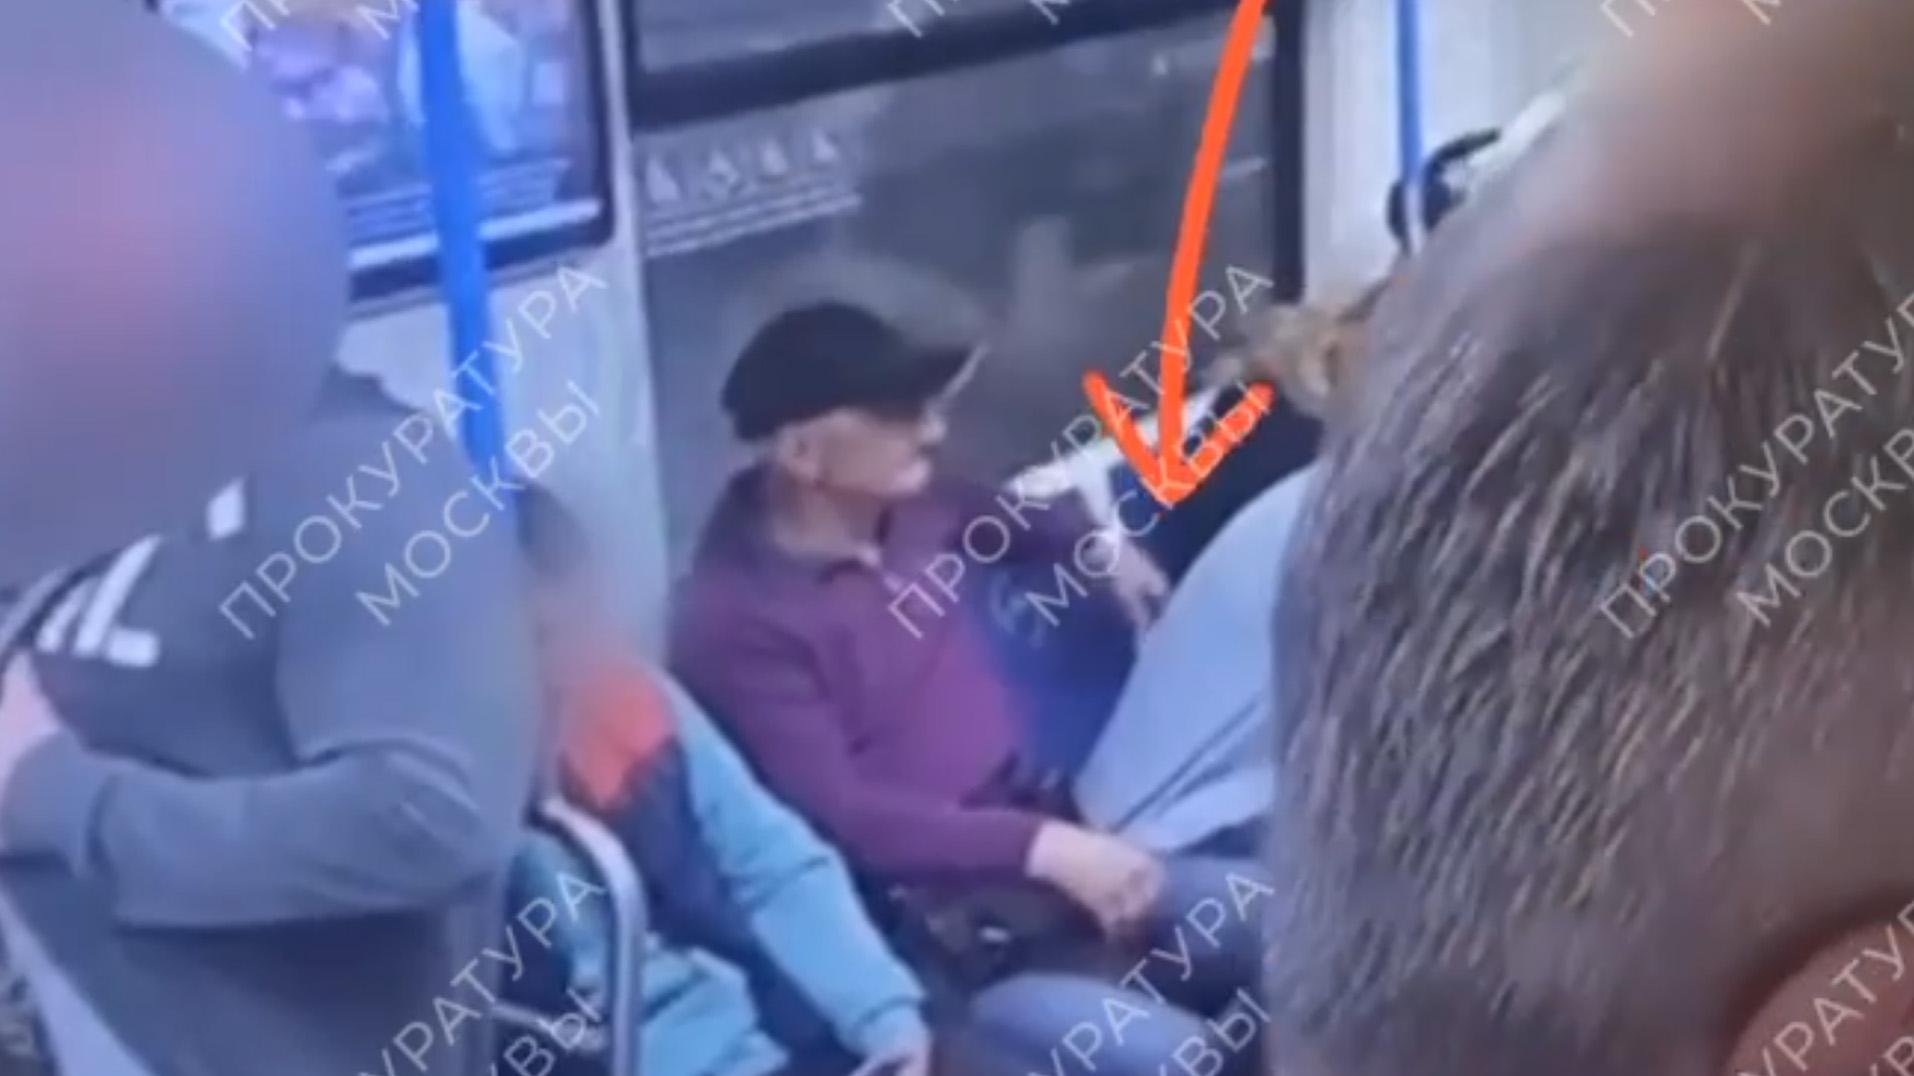 Суд арестовал карманника, укравшего телефон у пассажирки метро в Москве